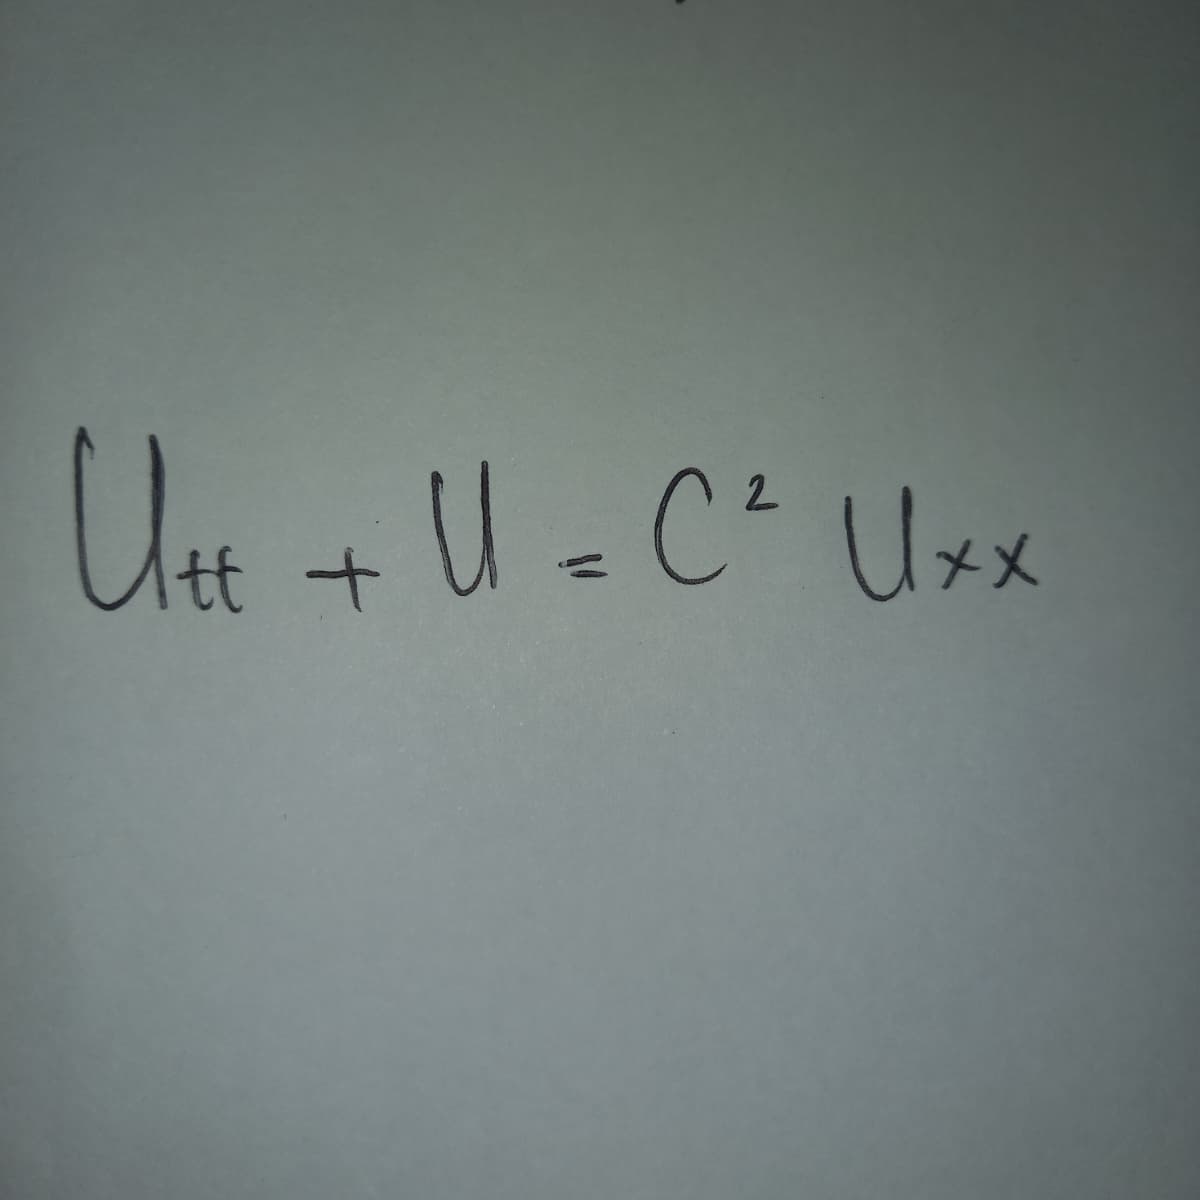 Utt + U = C² Uxx